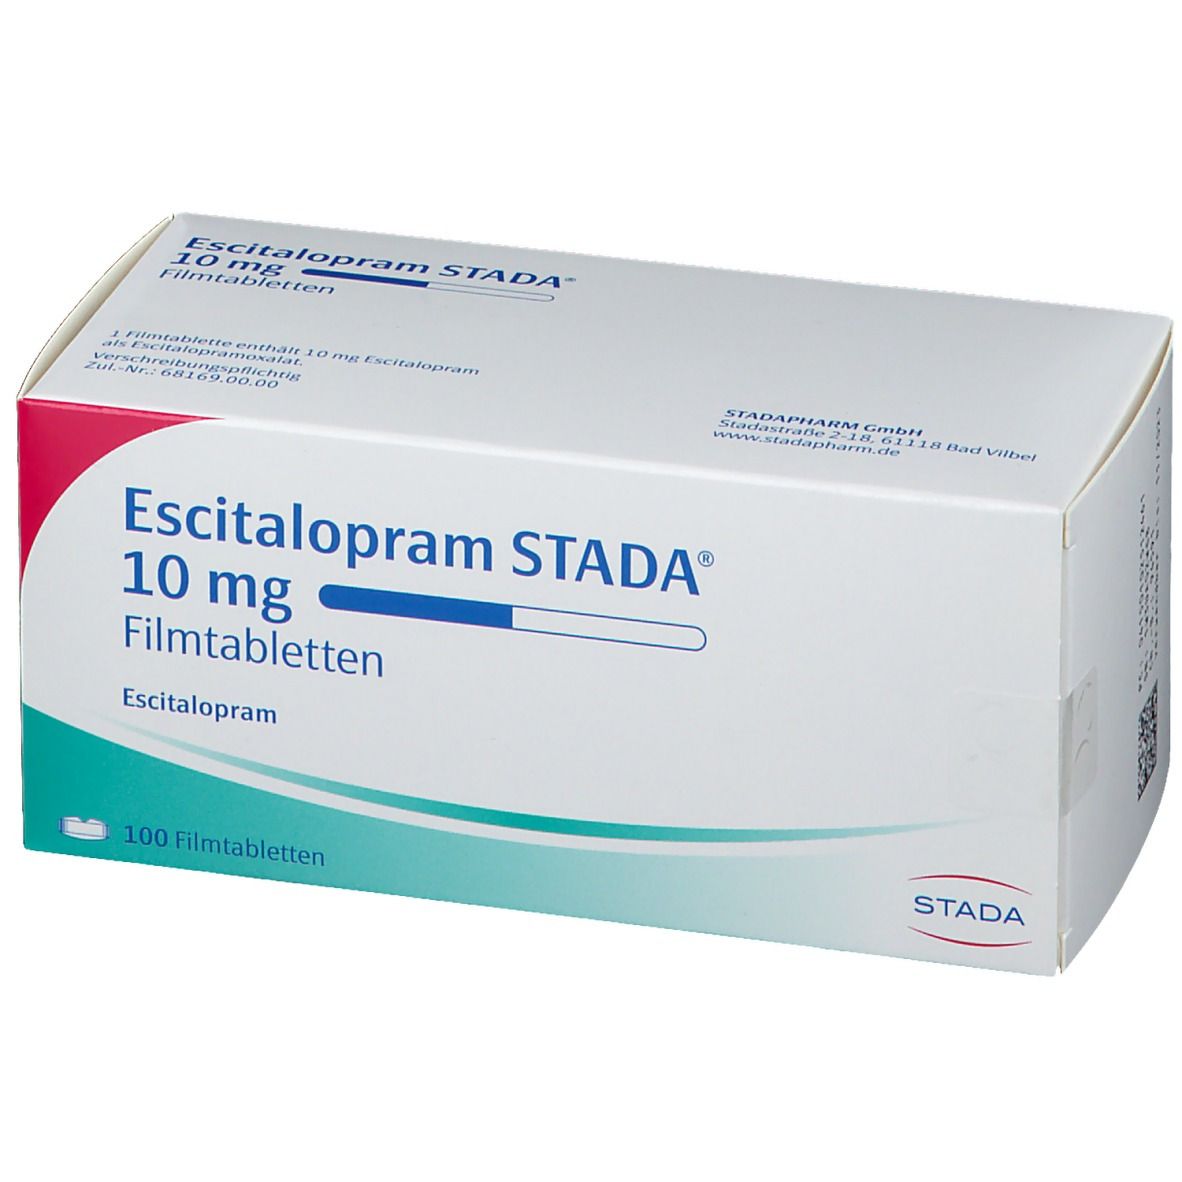 Escitalopram STADA® 10 mg